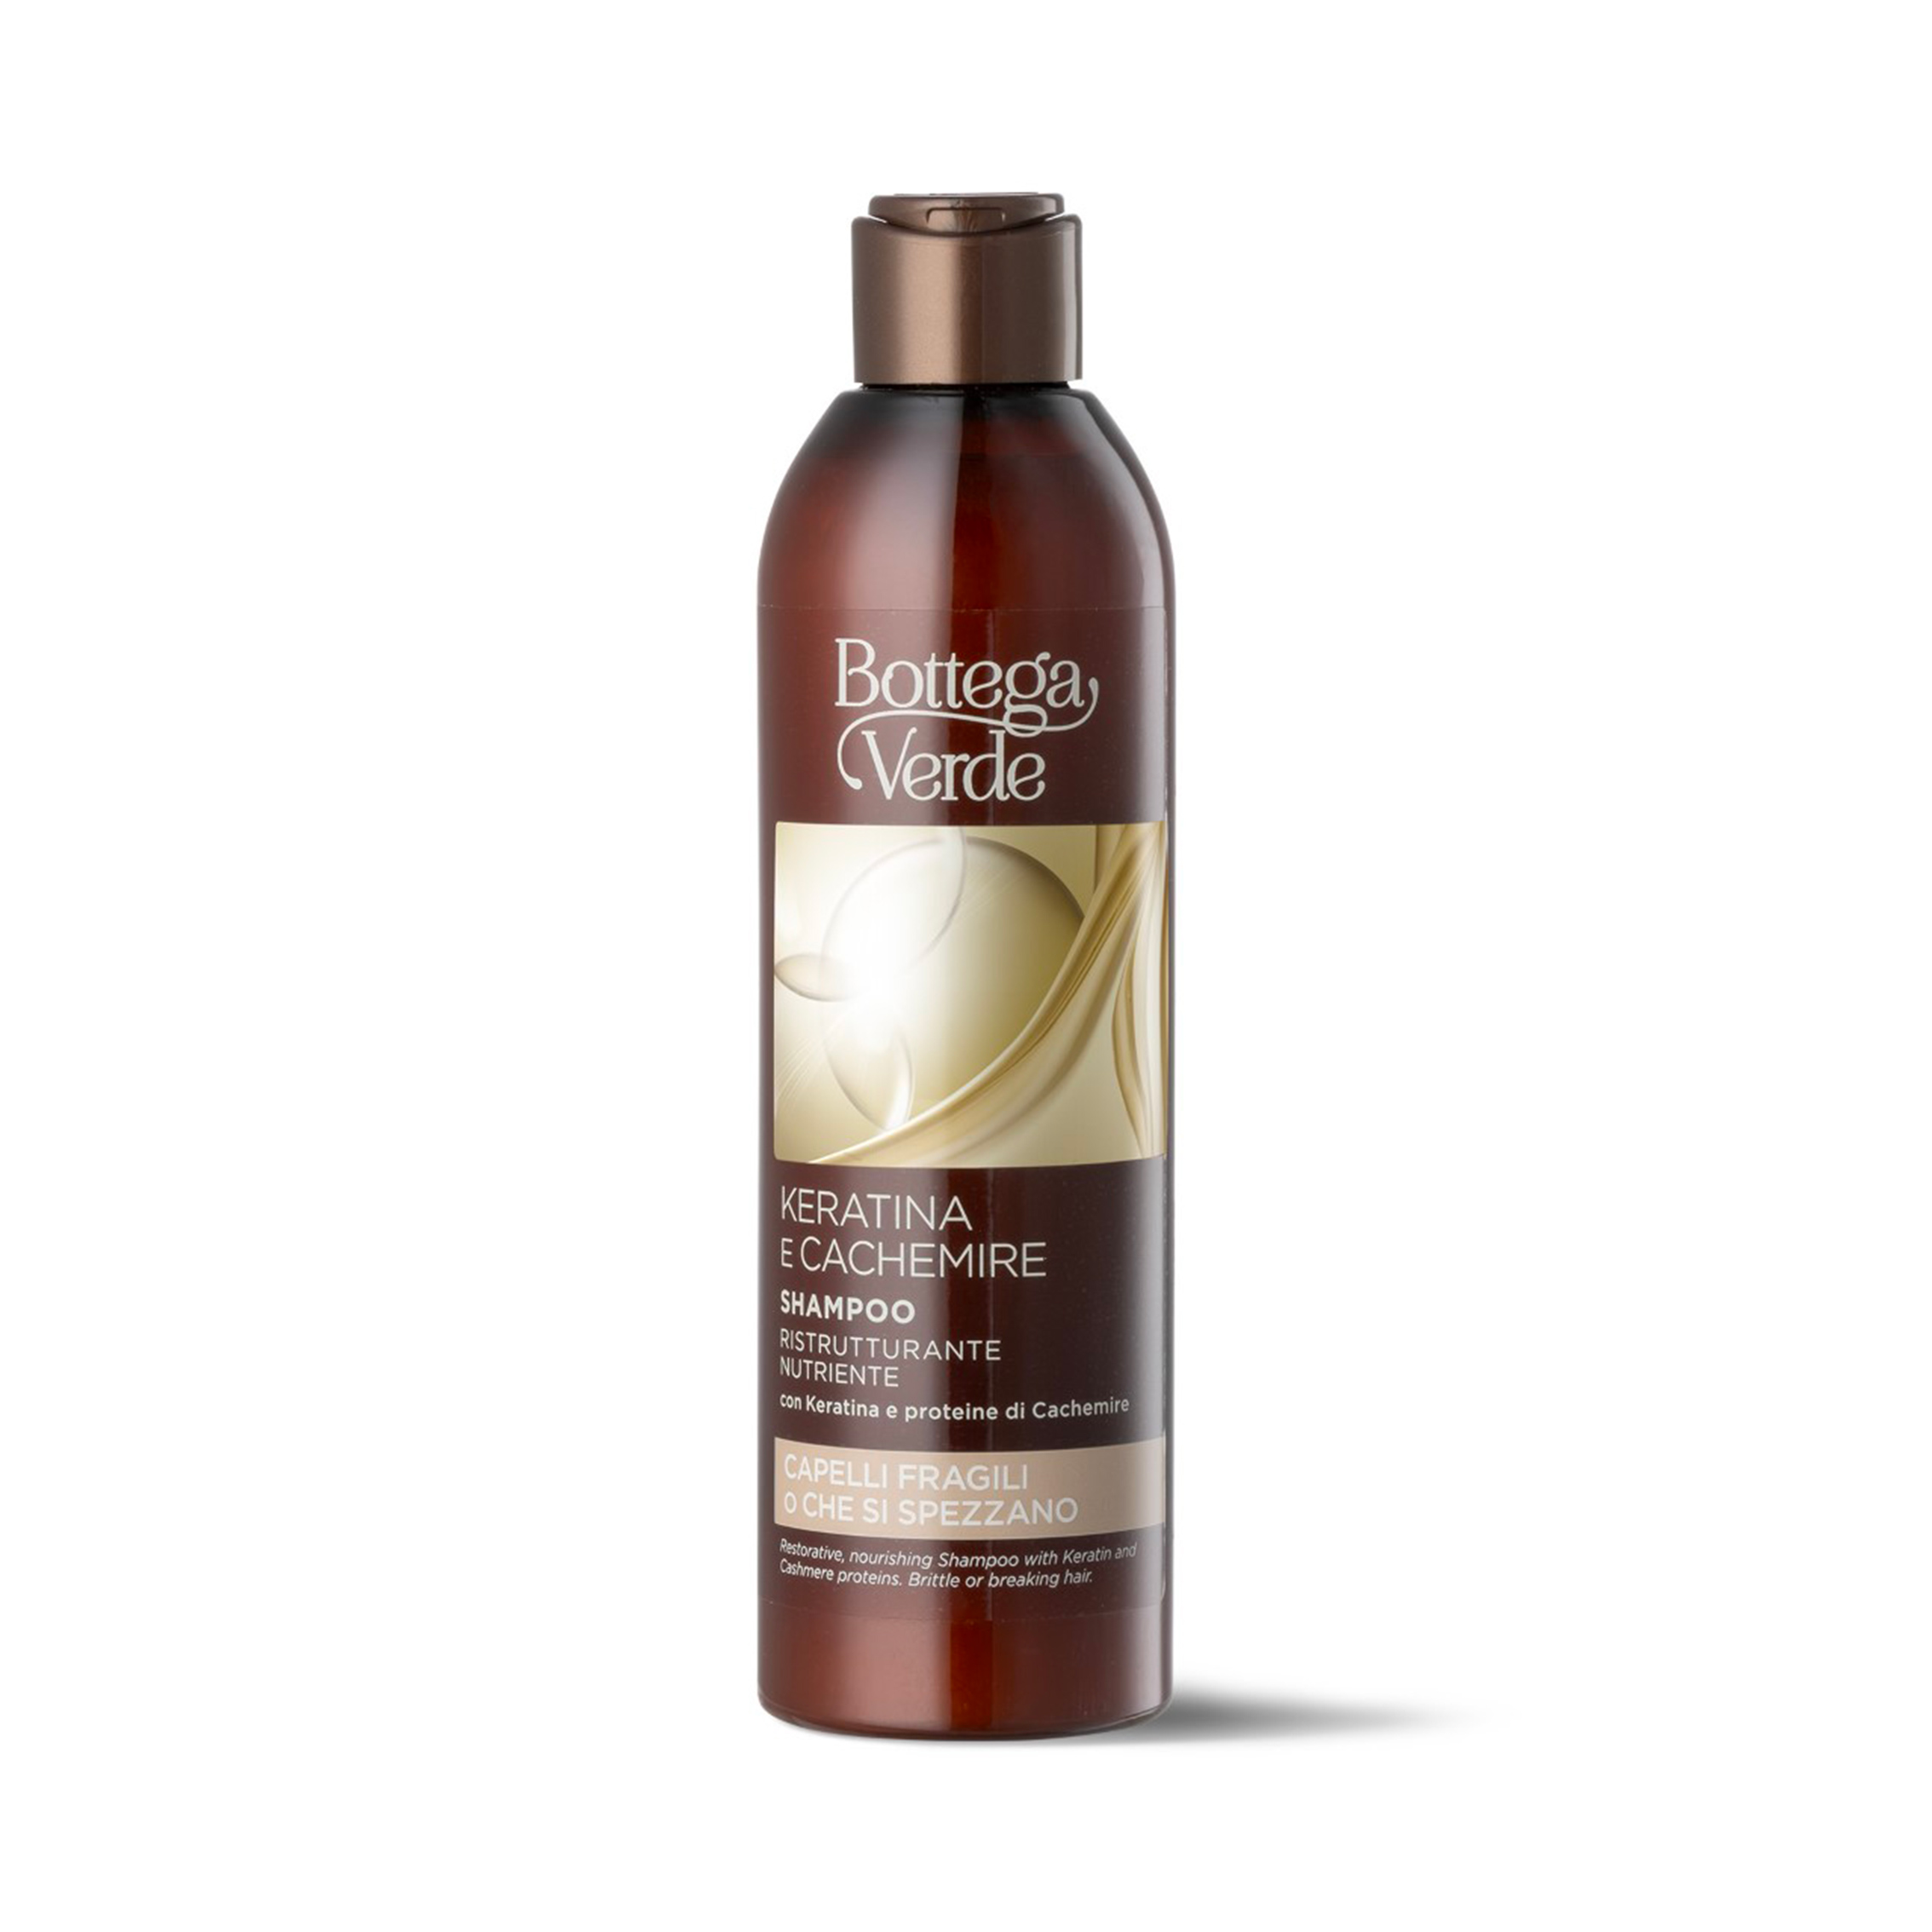 Keratina e Cachemire Shampoo ristrutturante nutriente con Keratina e proteine di Cachemire capelli fragil